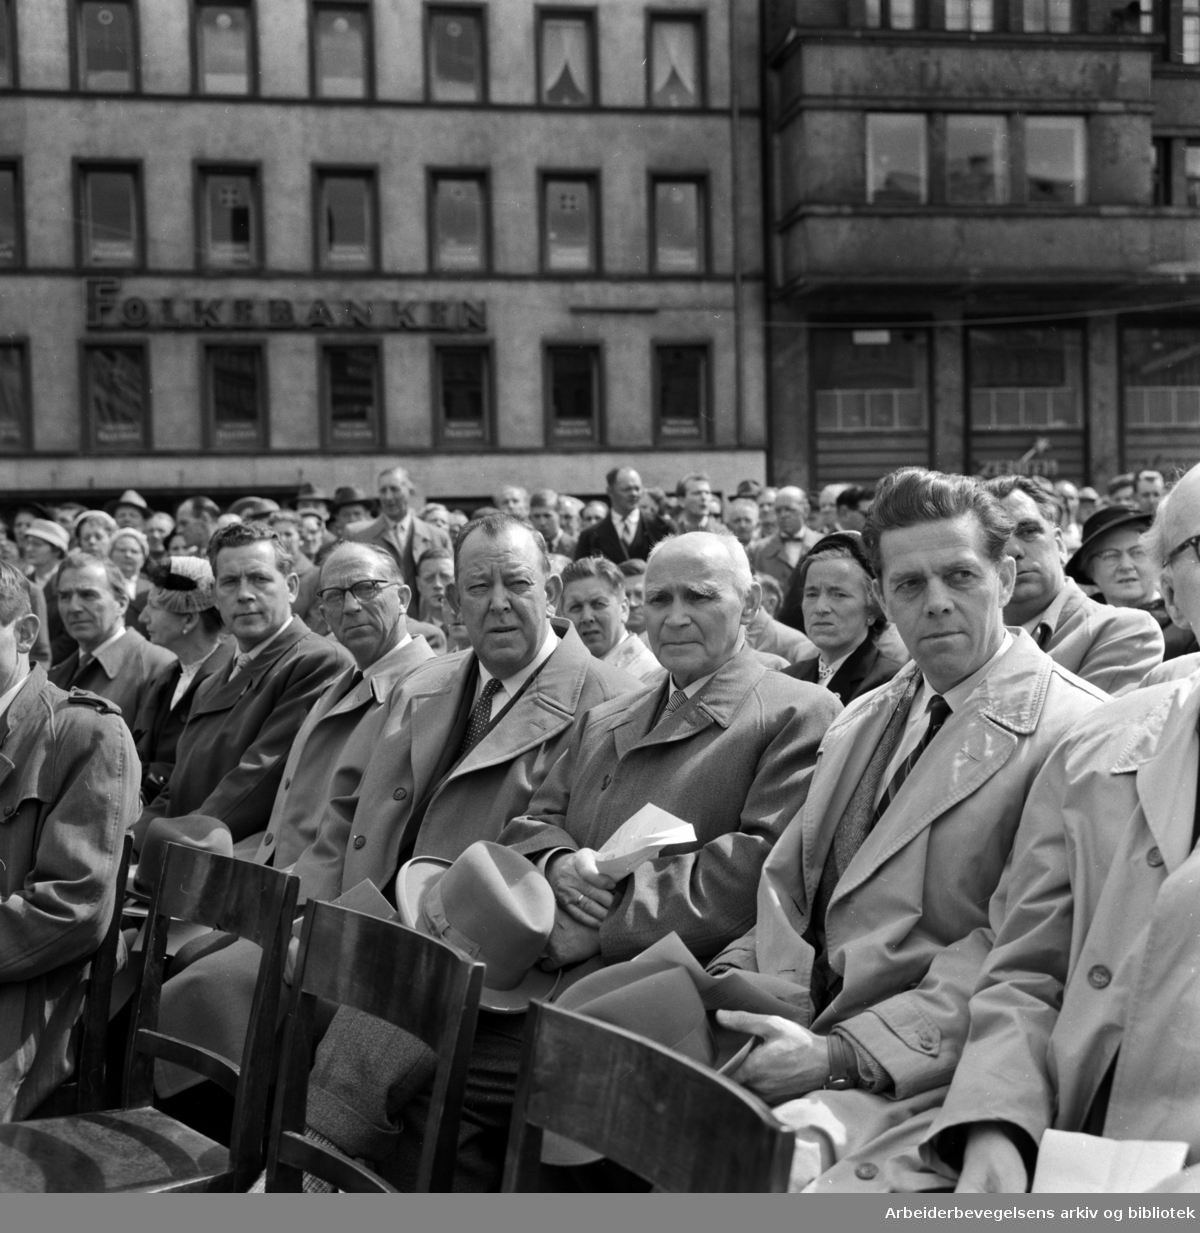 Avdukningen av Per Palle Storms "Pioneren" på Youngstorget 18. Mai 1958. Sittende i midten: Trygve Lie.